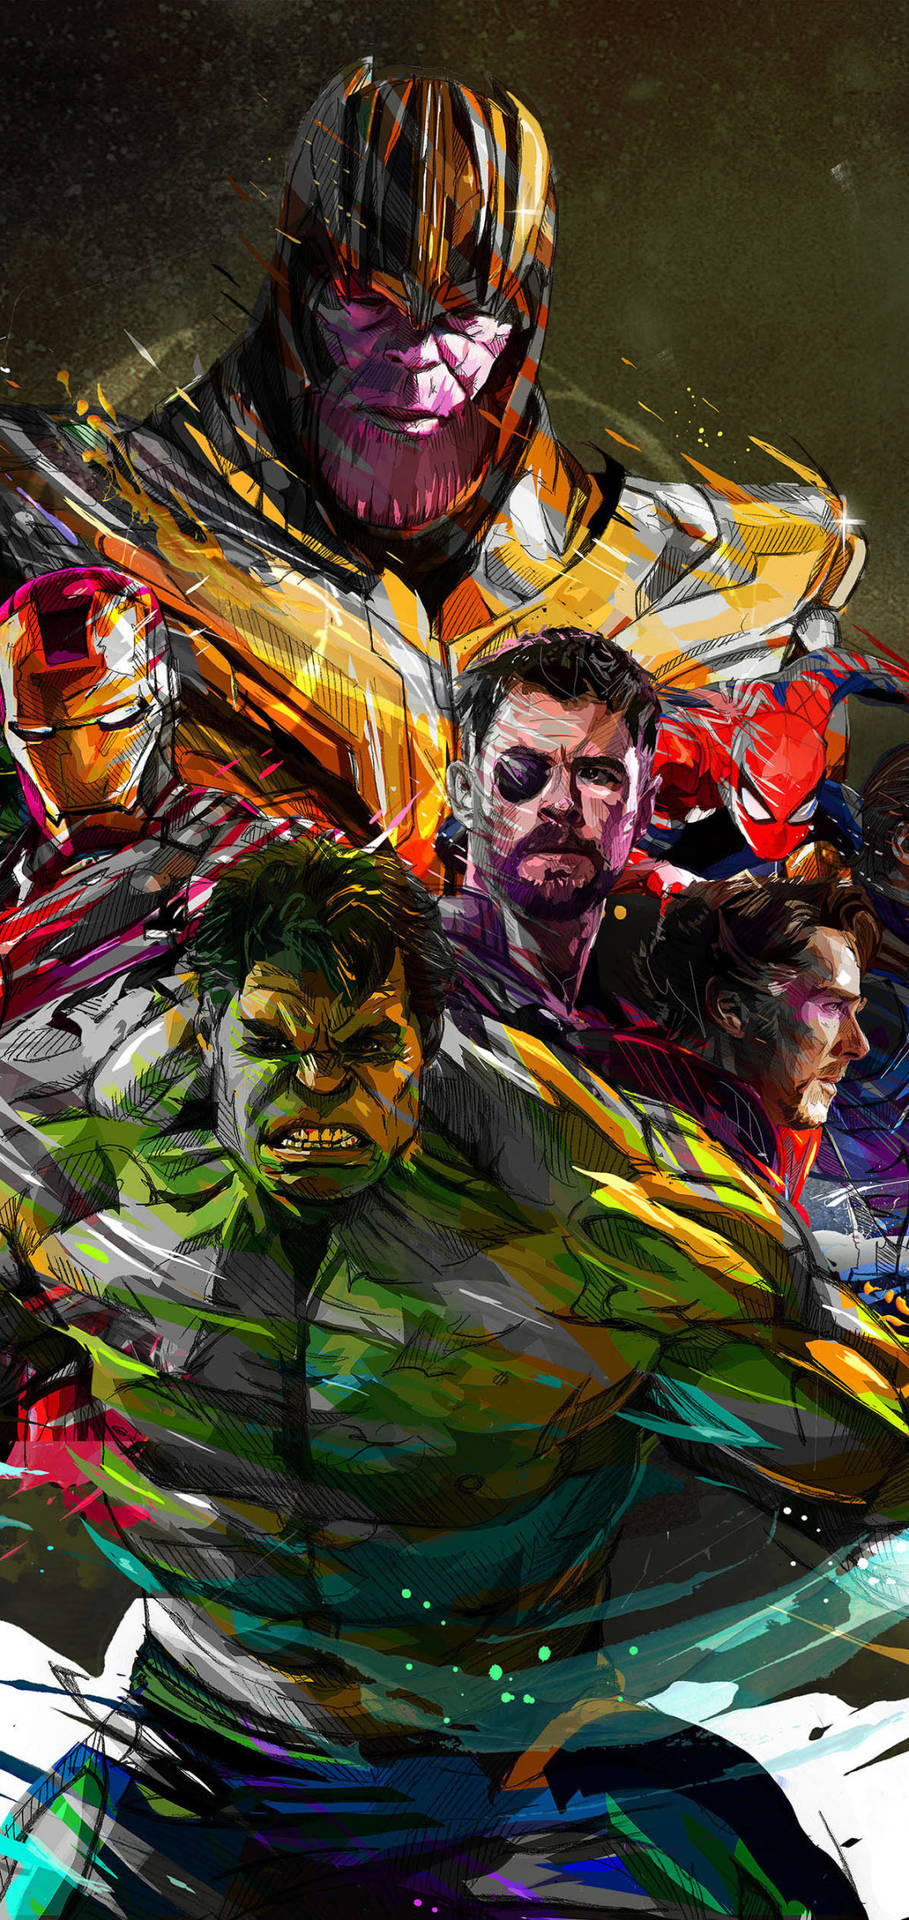 De bedste Avengers Abstract Graphic wallpapers nogensinde Wallpaper